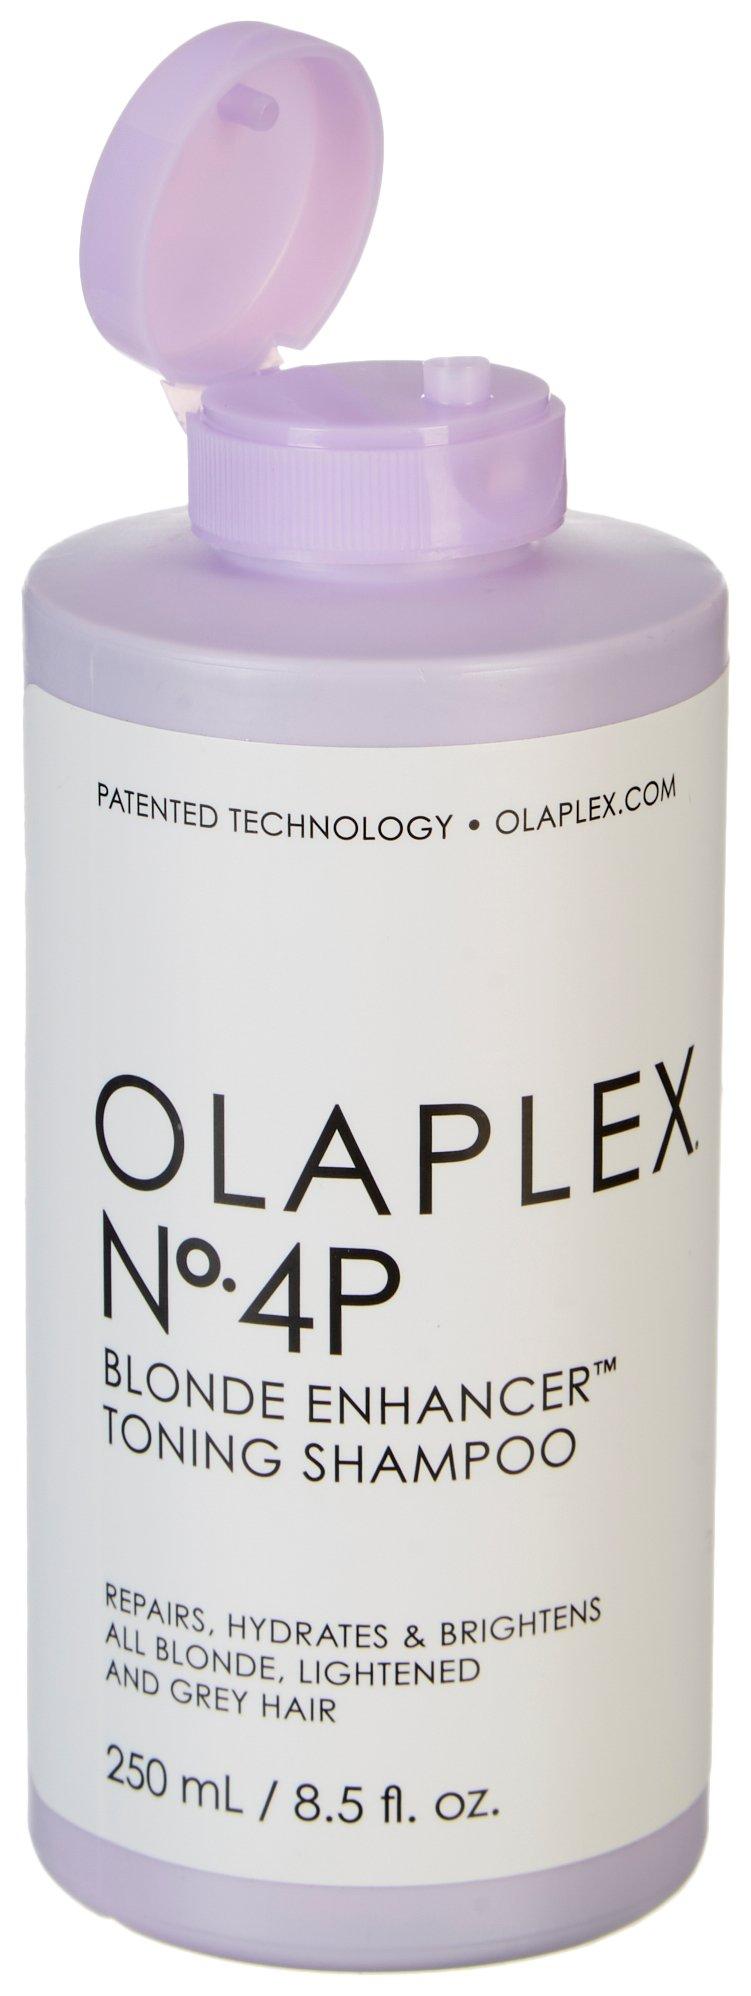 Olaplex No. 4P Blonde Enhancer Toning Shampoo 8.5